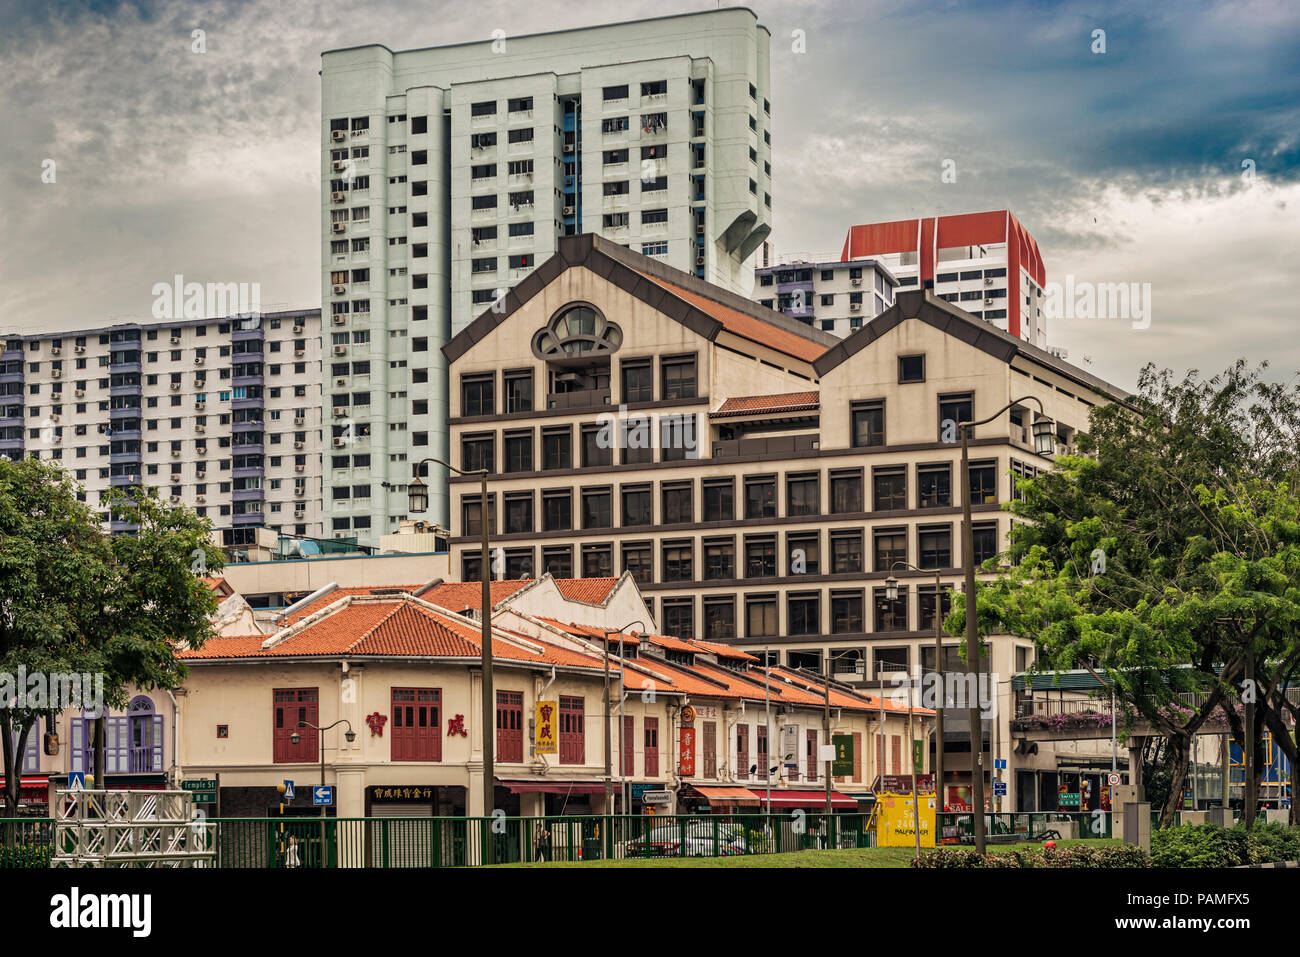 Janvier 10, 2018 Singapour : vieilles maisons coloniales au China town et immeubles à l'arrière-plan dans la ville de Singapour. Banque D'Images